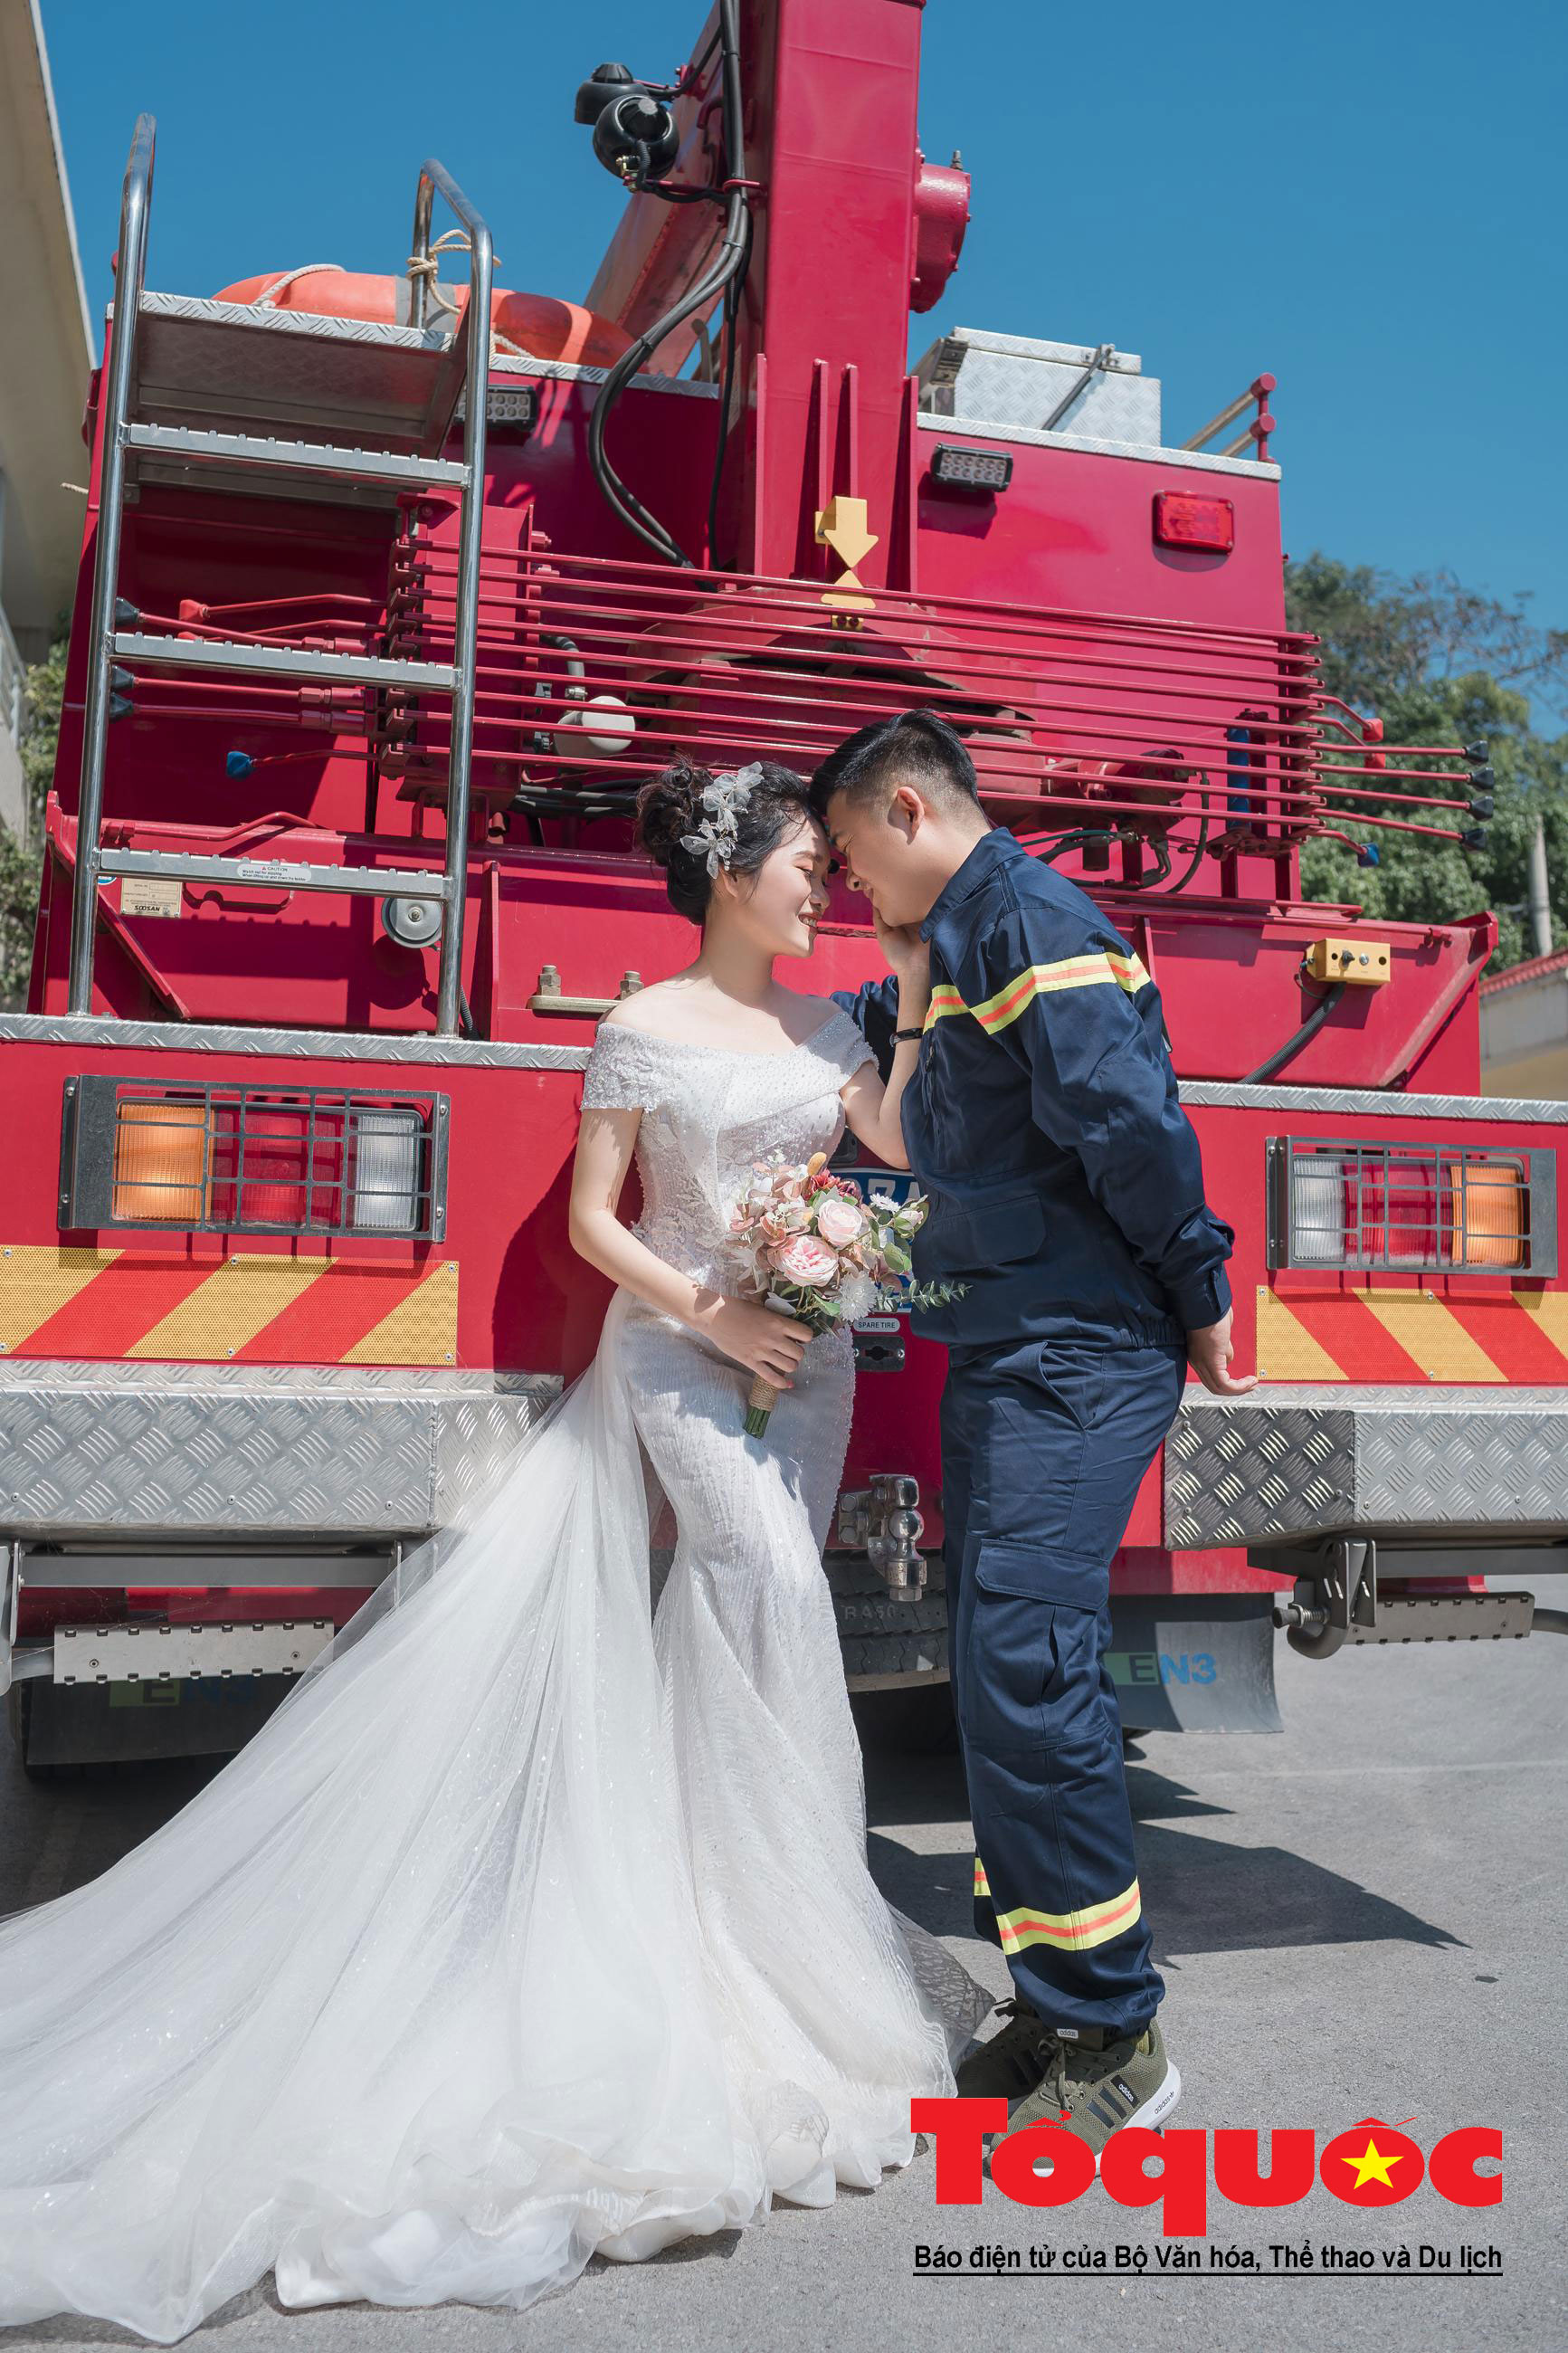 Ảnh cưới lính cứu hỏa Nghệ An sẽ khiến bạn cảm thấy phấn khích và hào hứng. Những bức ảnh này vô cùng độc đáo và đầy cảm hứng, sẽ khiến bạn không thể rời mắt khỏi chúng!